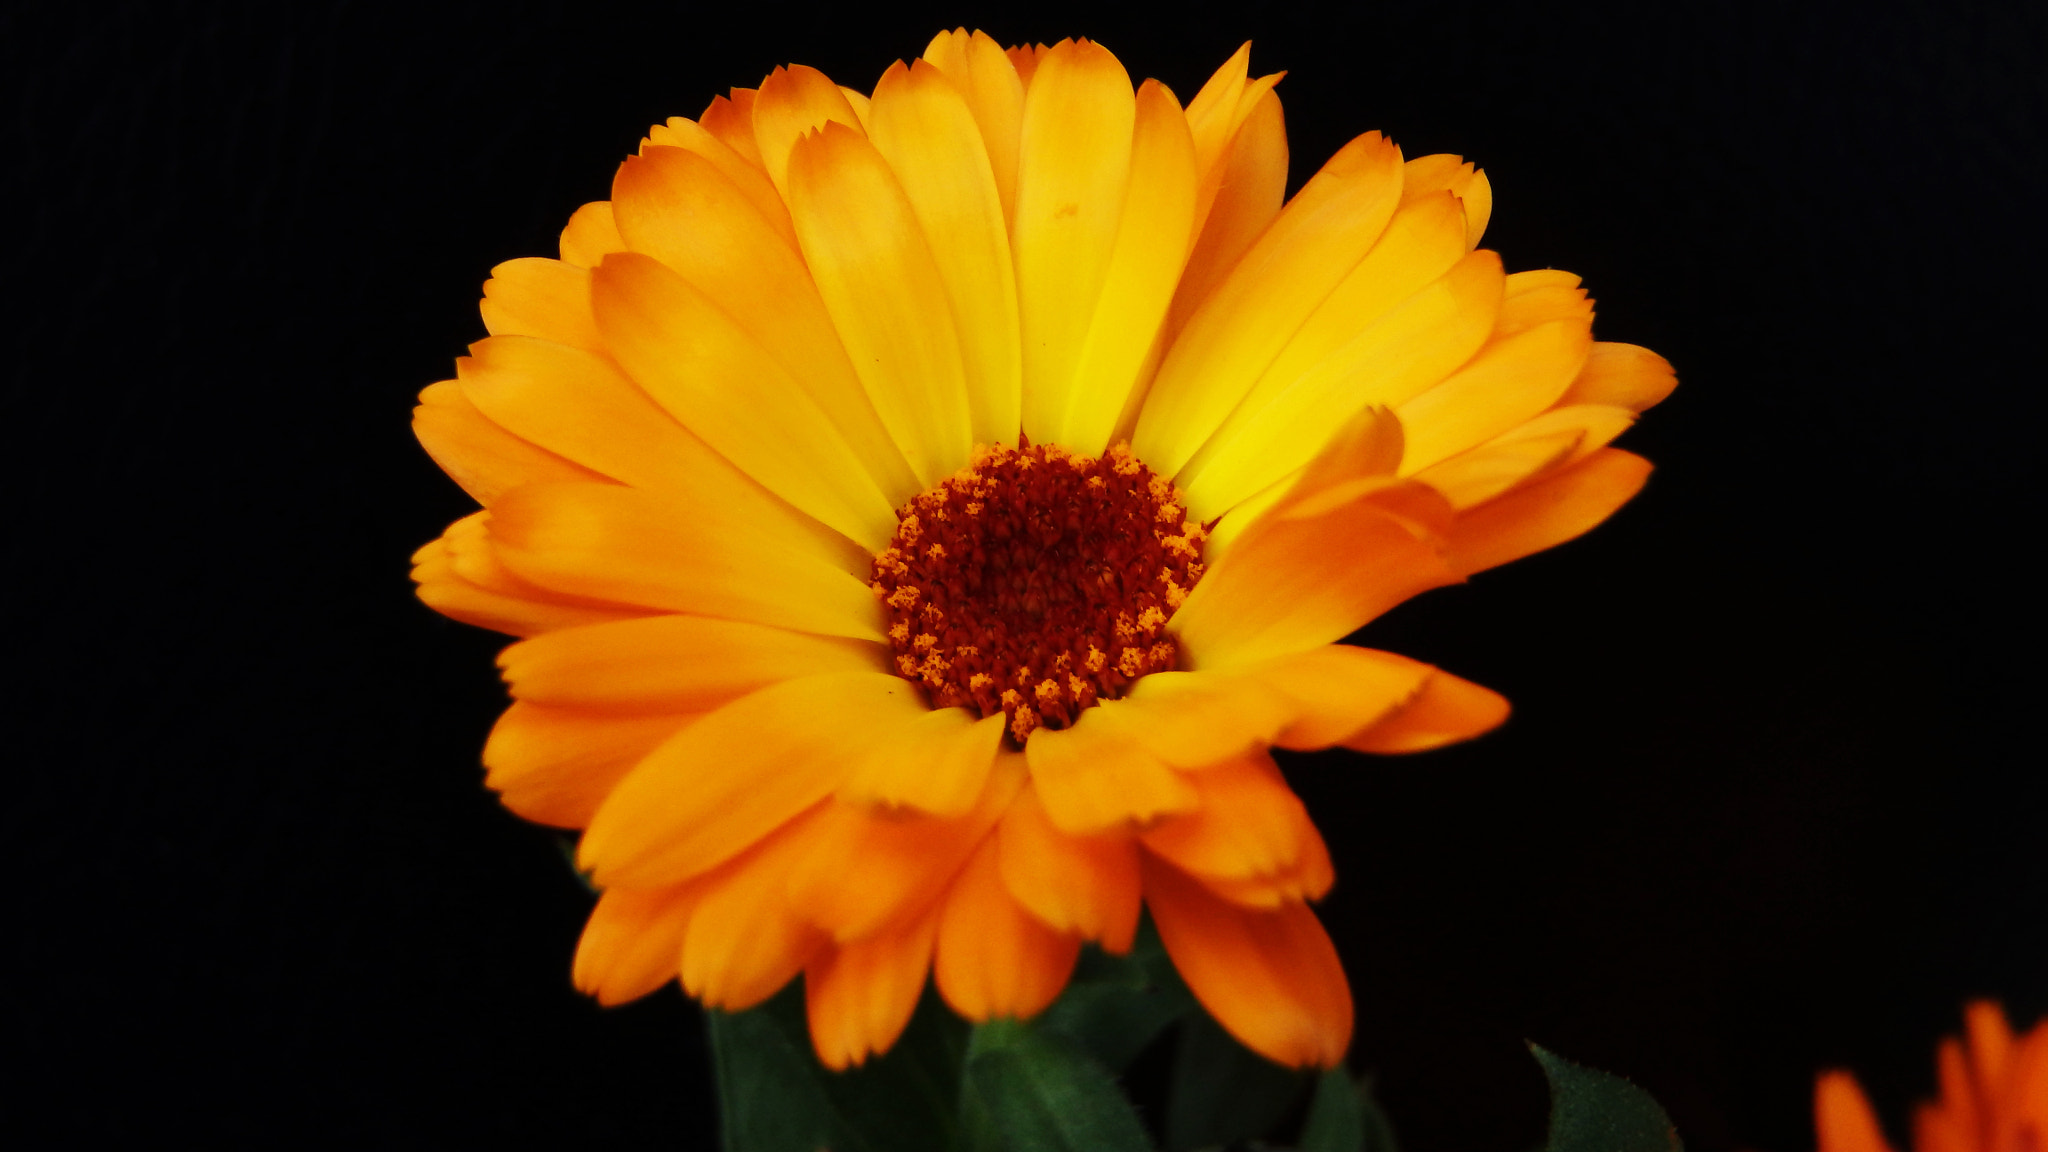 Olympus TG-830 sample photo. Orange daisy......... photography